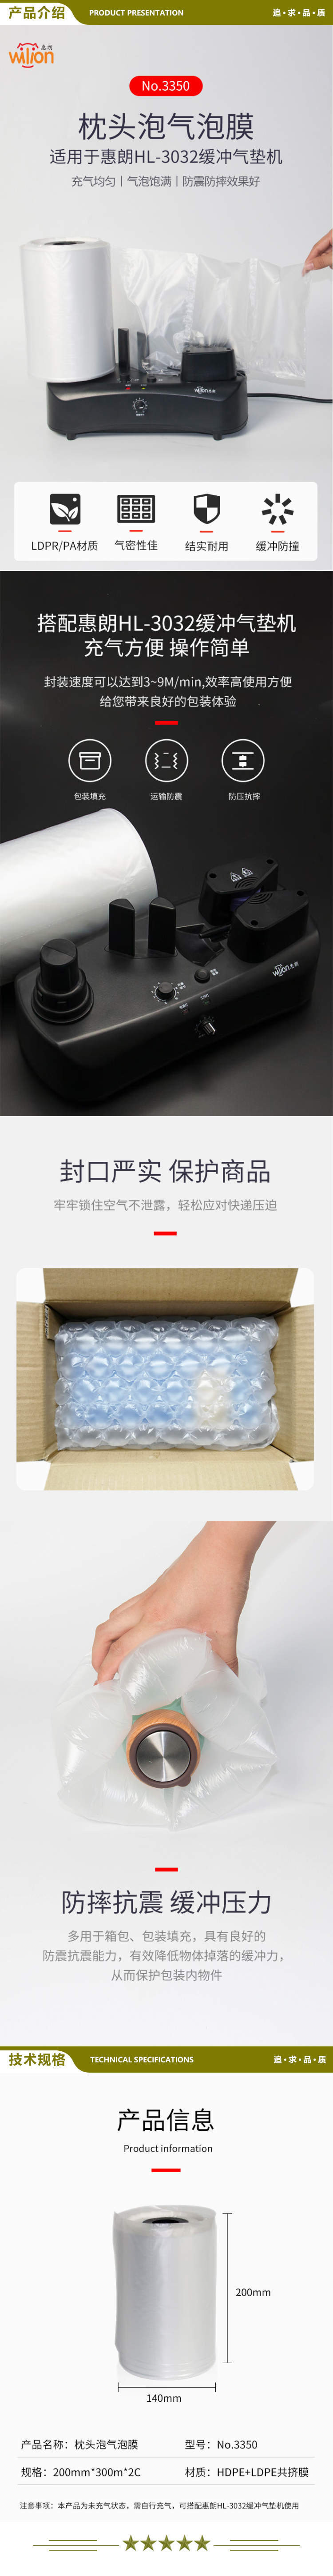 惠朗 huilang HL 3350 快递包装袋充气 枕头型气泡膜  2.jpg